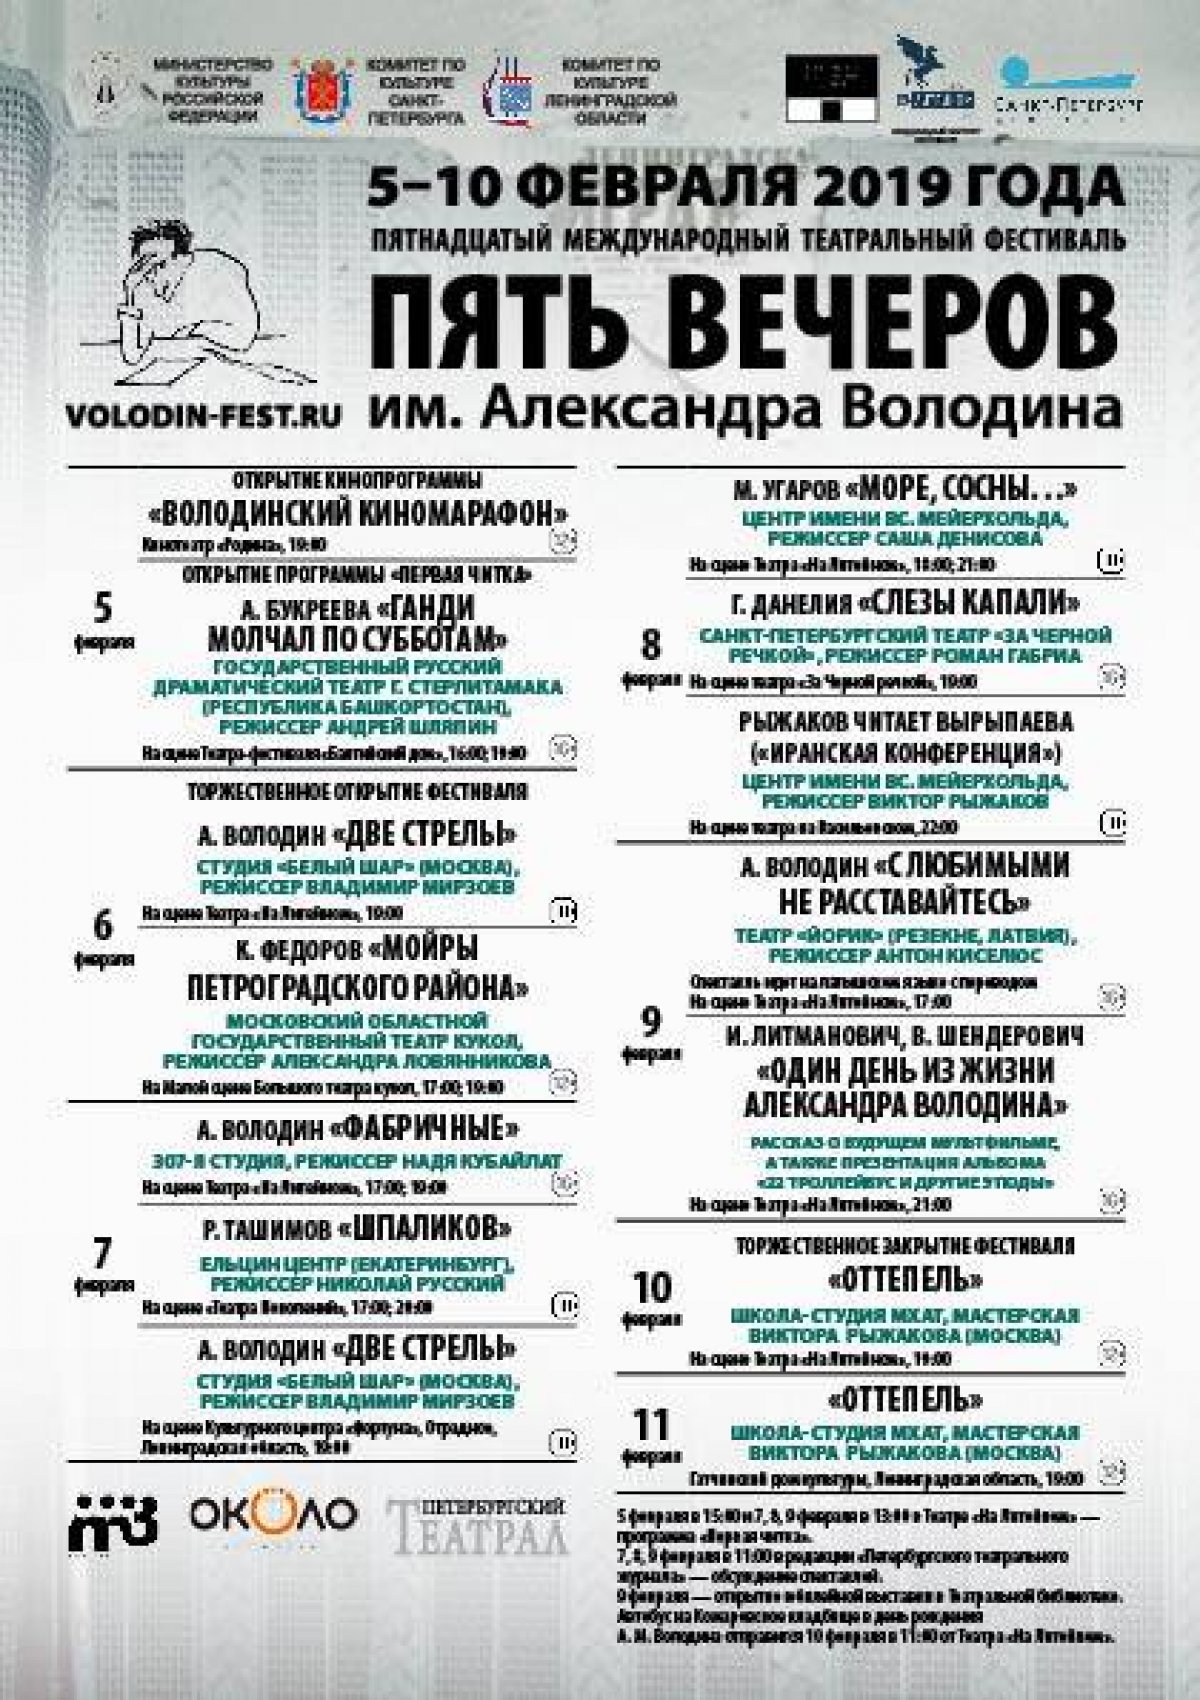 Новый спектакль 3 курса (мастер Виктор Рыжаков) "Оттепель" будет сыгран в Санкт-Петербурге